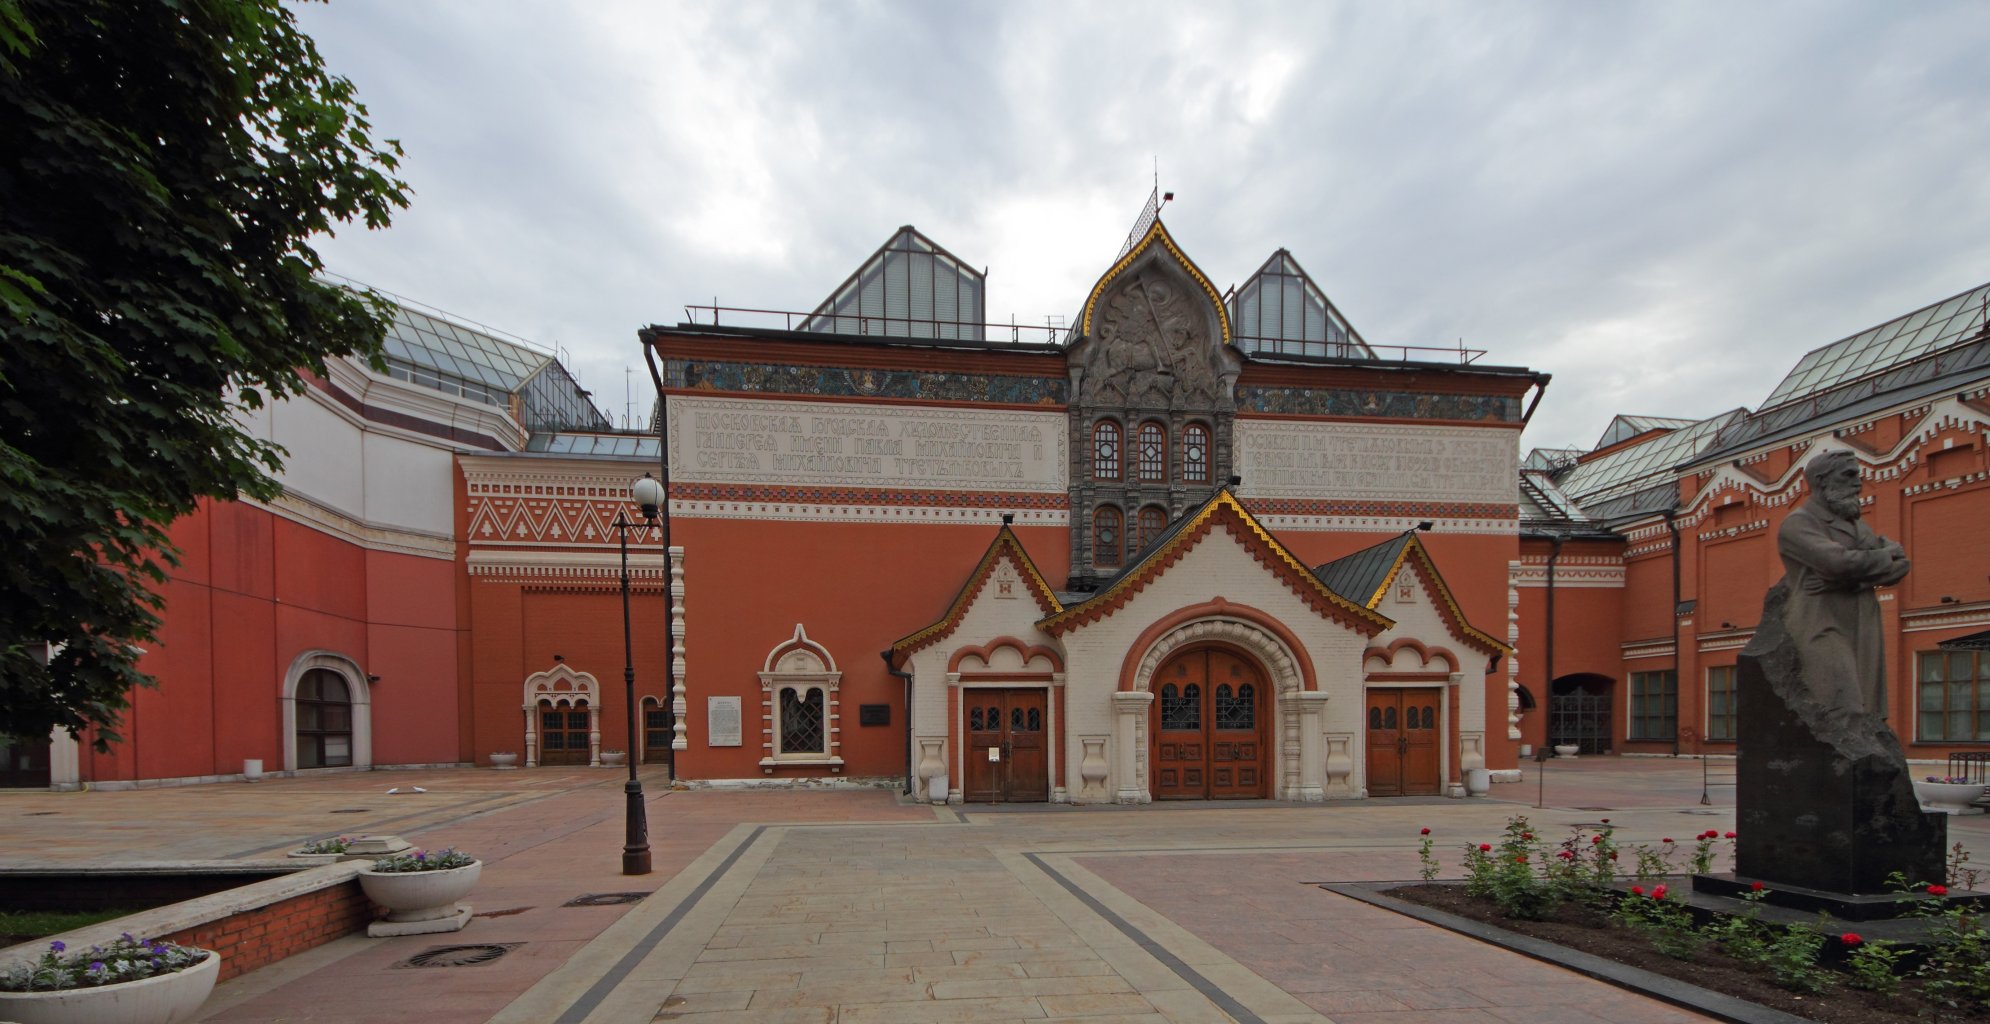 Tretyakov-képtár központi épülete - forrás: wikipedia